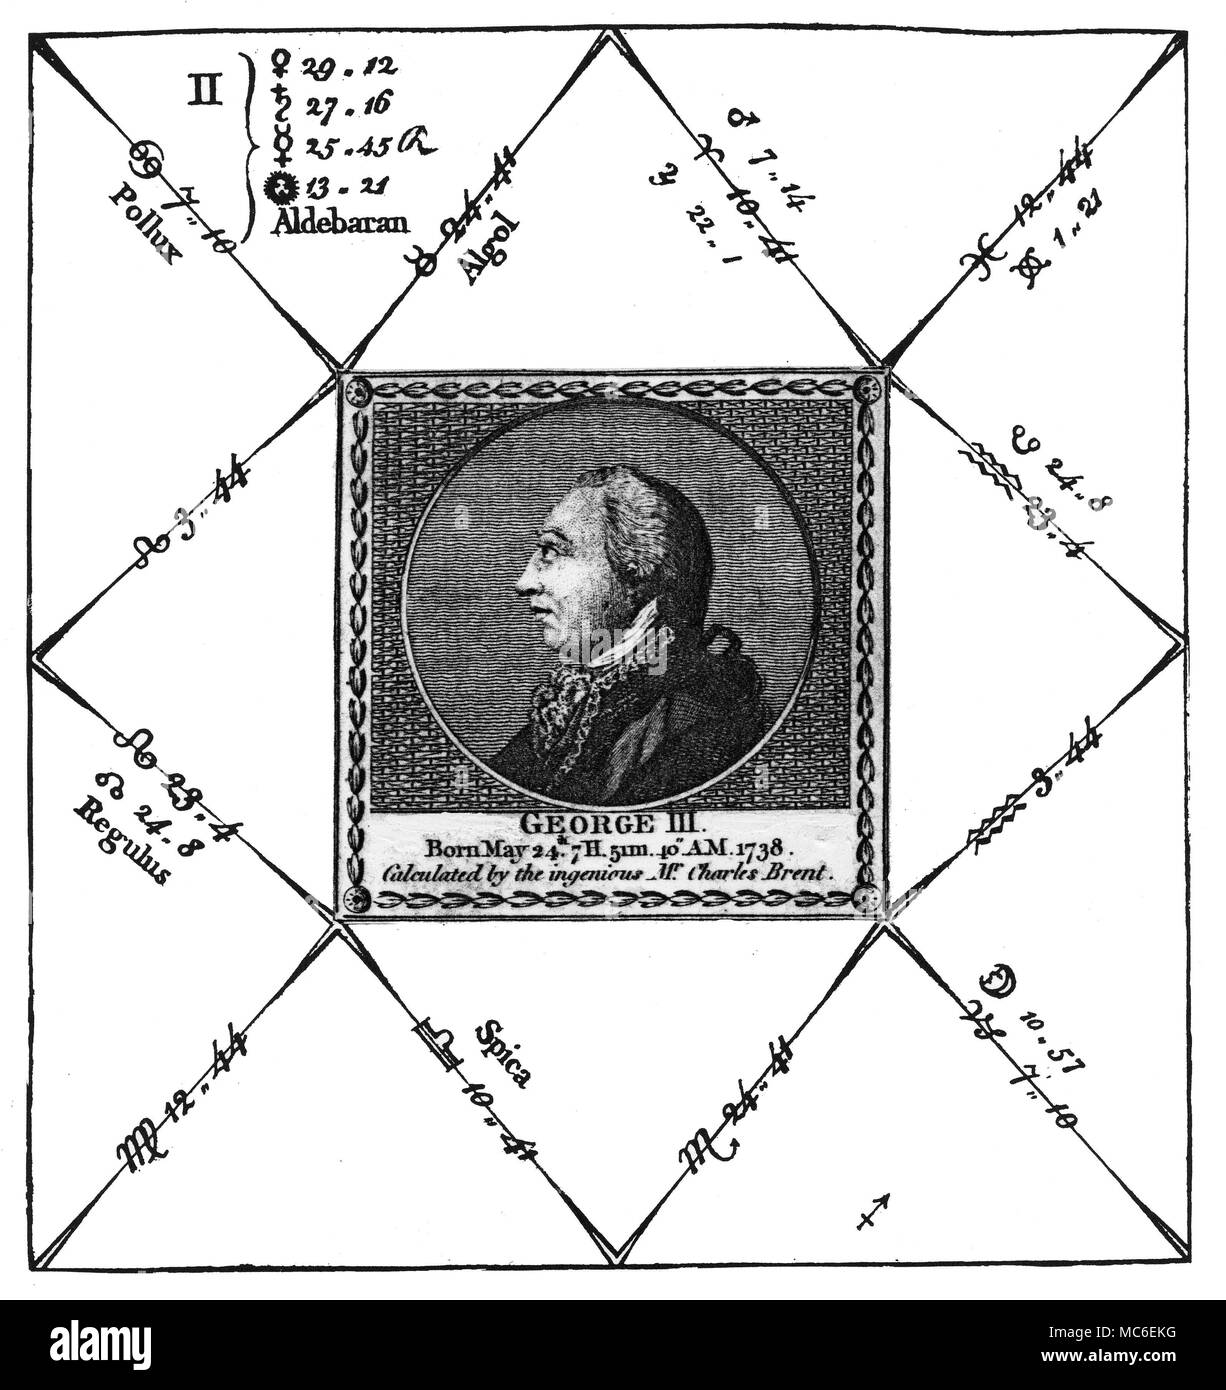 Horoscope astrologie - La naissance de tableau du roi George III d'Angleterre, né le 24 mai, 1738. Le graphique est dérivé de la gravure publiée par Ebenezer éventuellement dans une nouvelle illustration de la Sciences Occultes : ou l'Art de l'fortelling d'événements futurs et éventualités, 179... par Charles Brent. L'astrologue, Brent, a intégré l'influence des étoiles fixes - par exemple, Aldebaran est avec le soleil, habitant avec Regulus. Banque D'Images